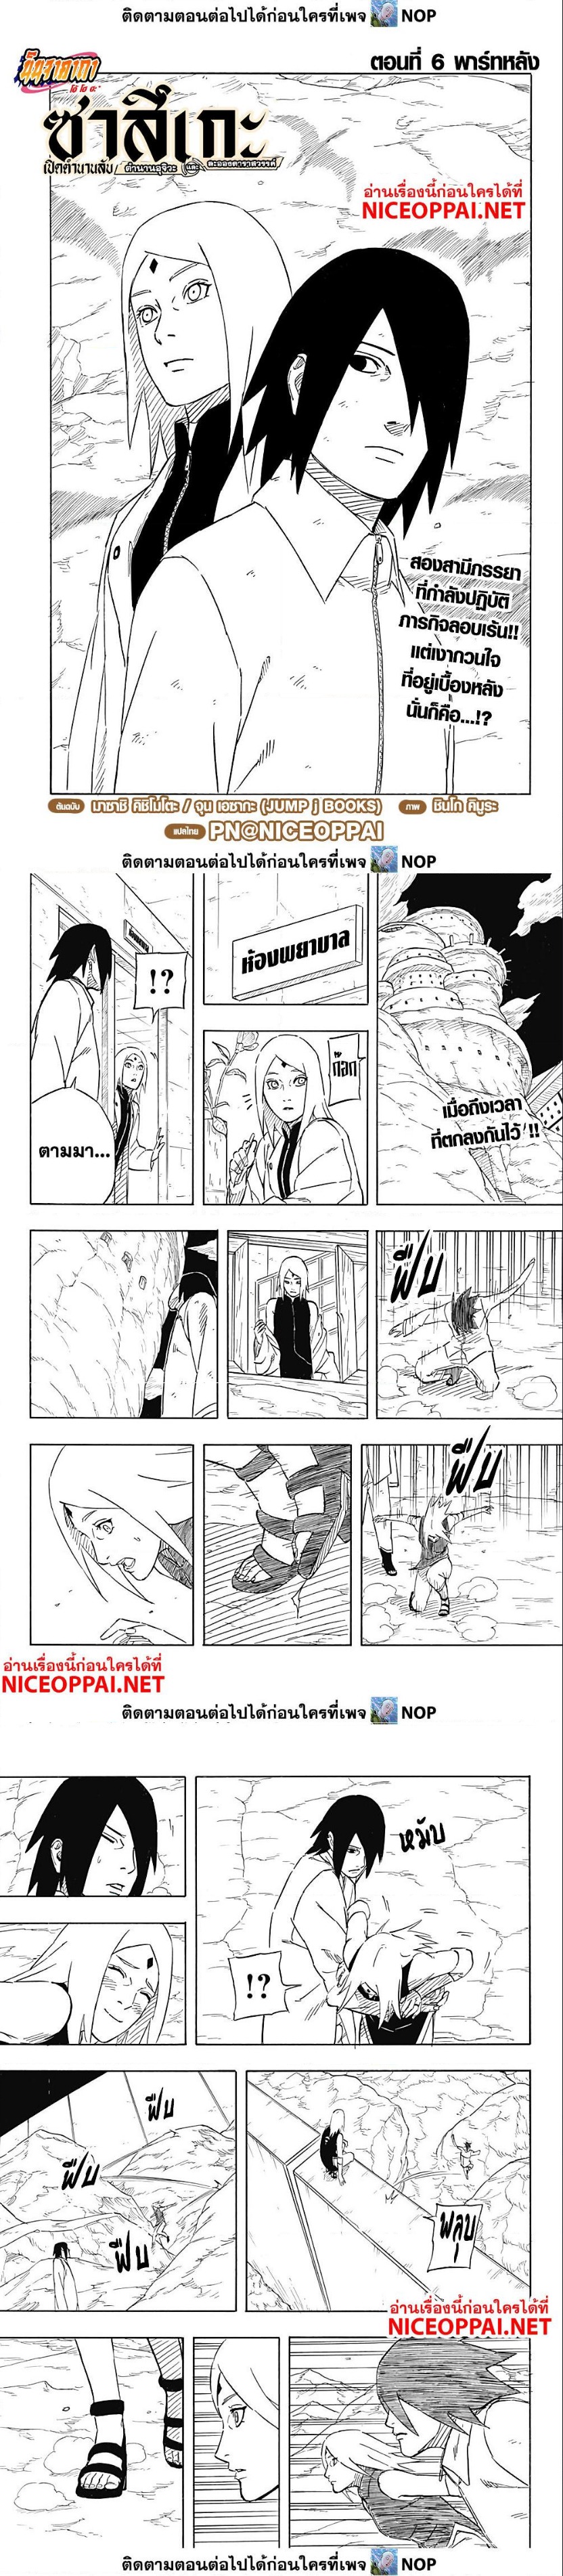 Naruto Sasuke’s Story 6.2 (1)